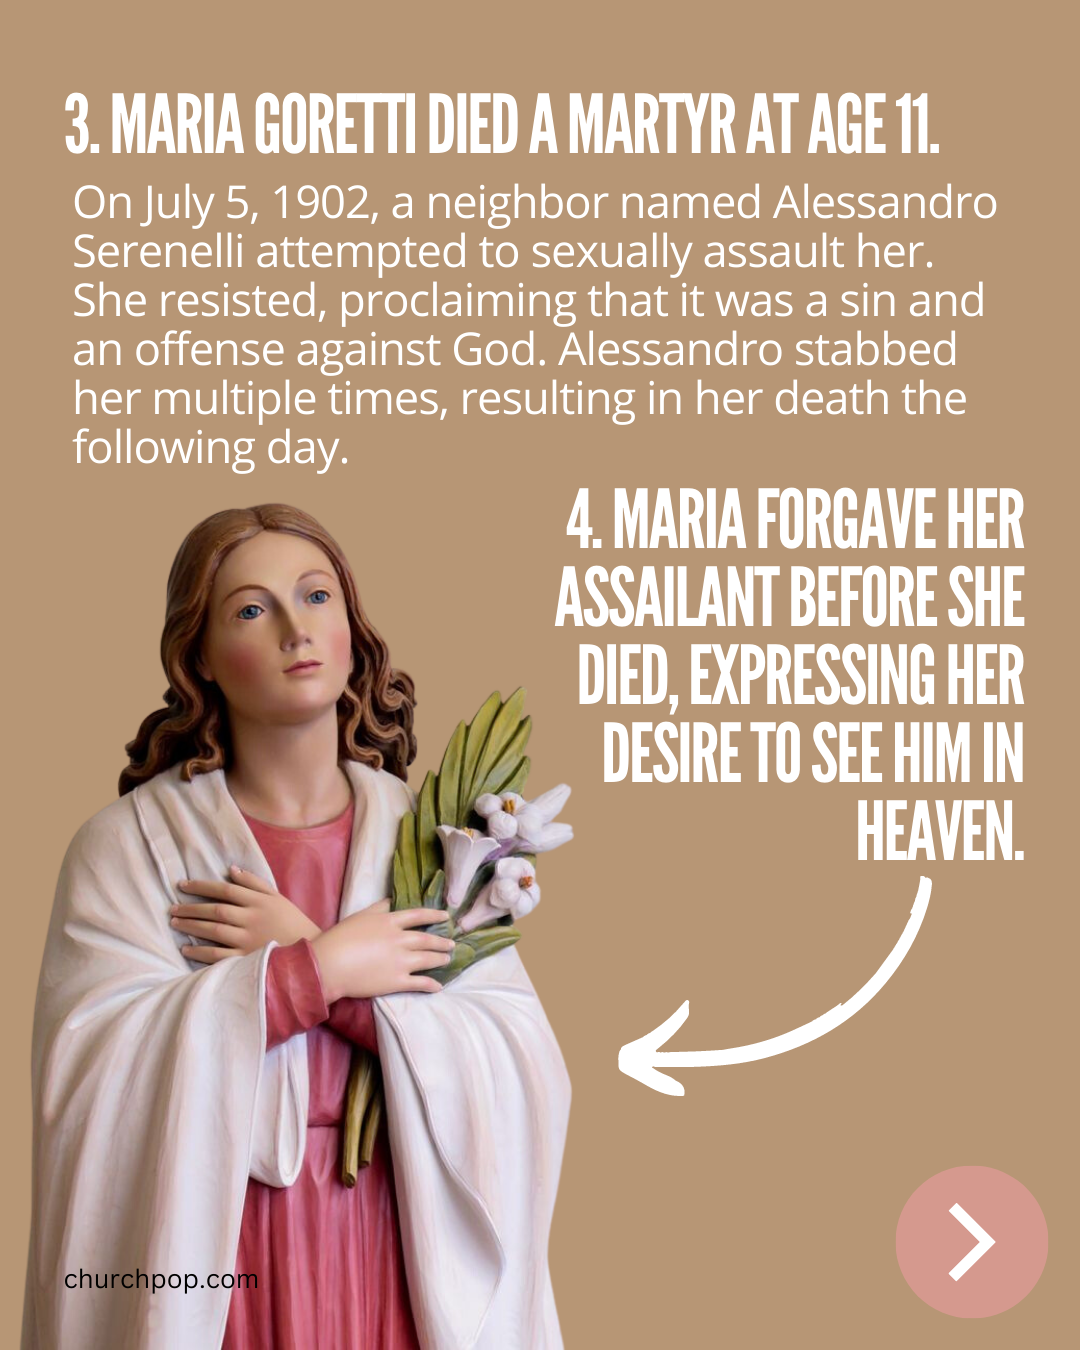 How did Maria Goretti die?